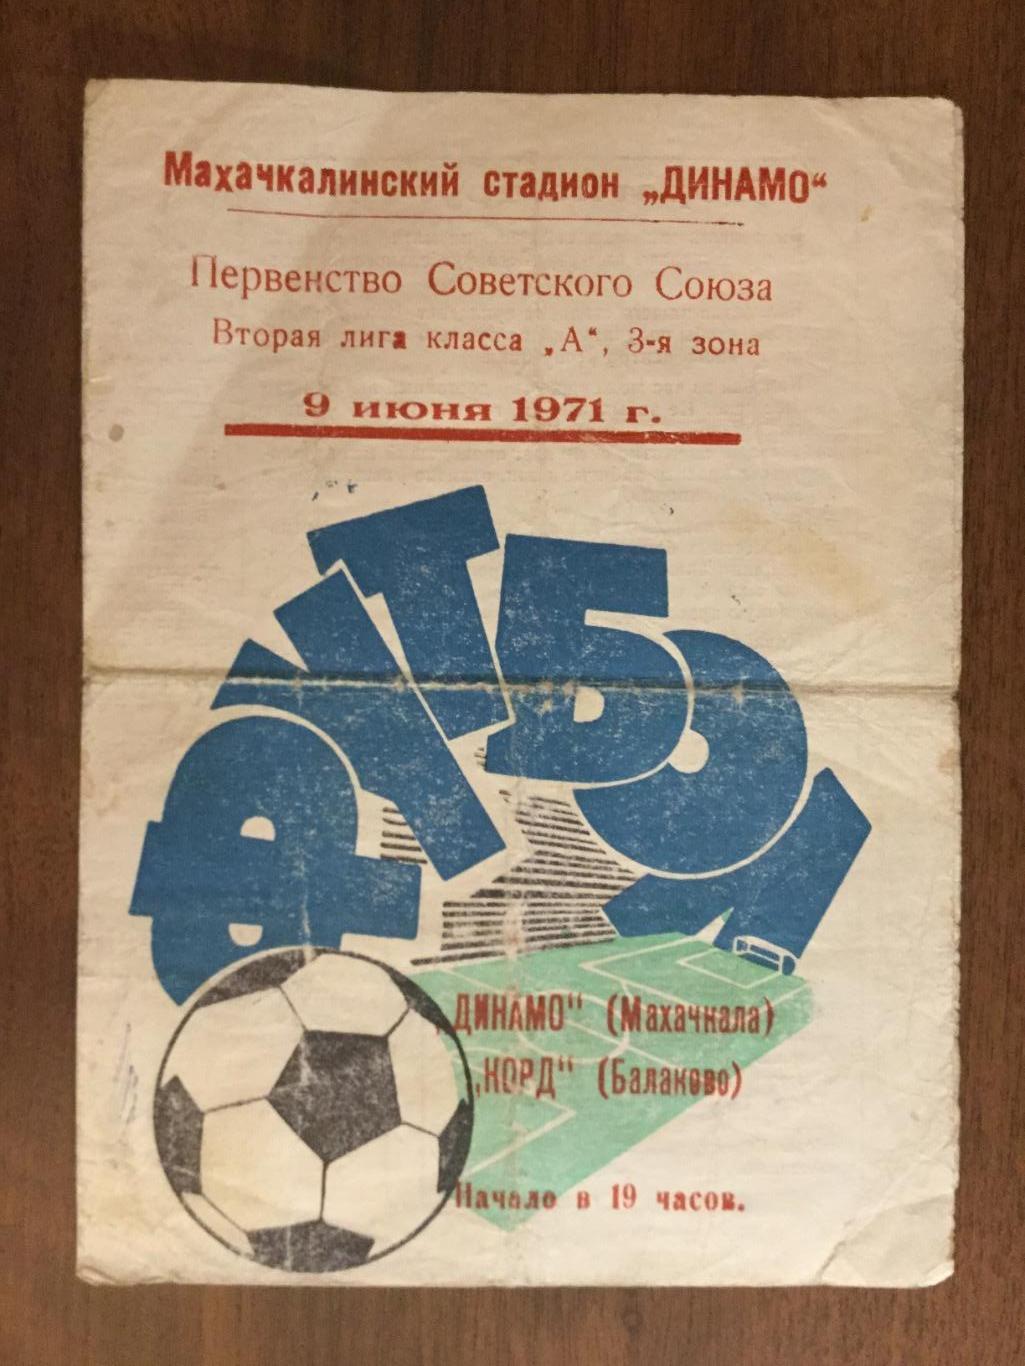 Динамо Махачкала - Корд Балаково - 1971